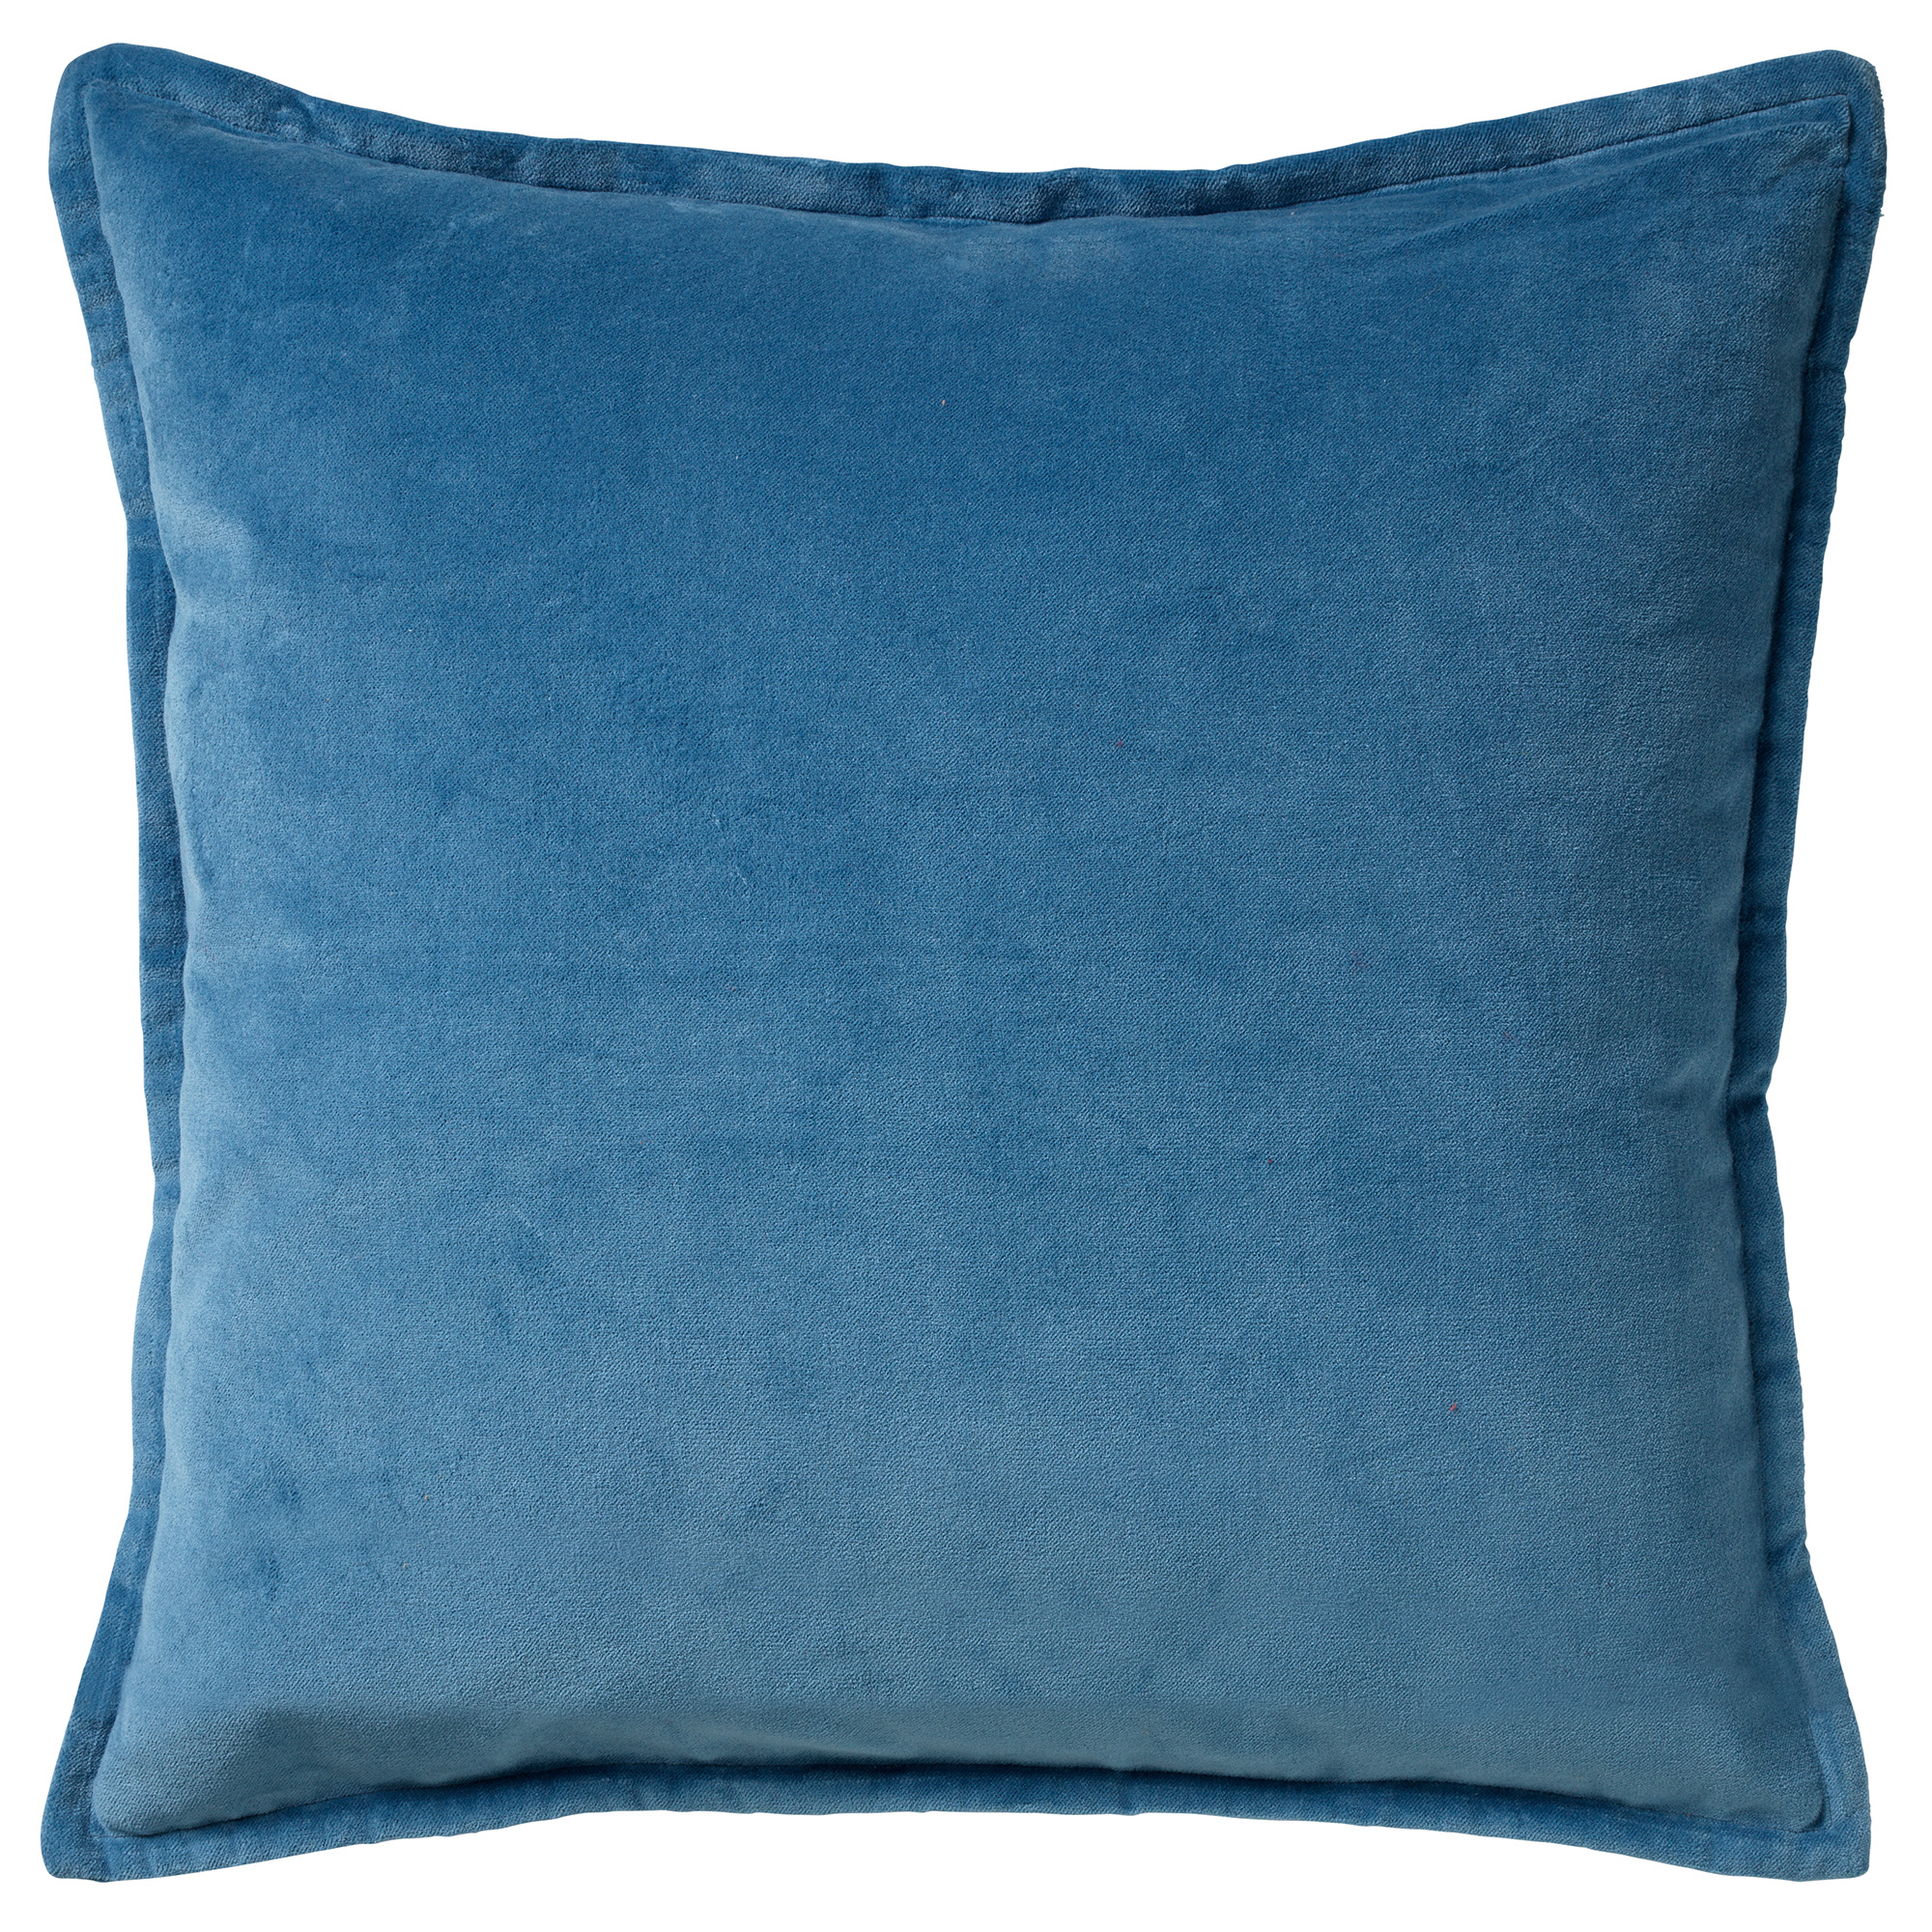 CAITH - Sierkussen 50x50 cm - 100% katoen - velvet - lekker zacht - Provincial Blue - lichtblauw